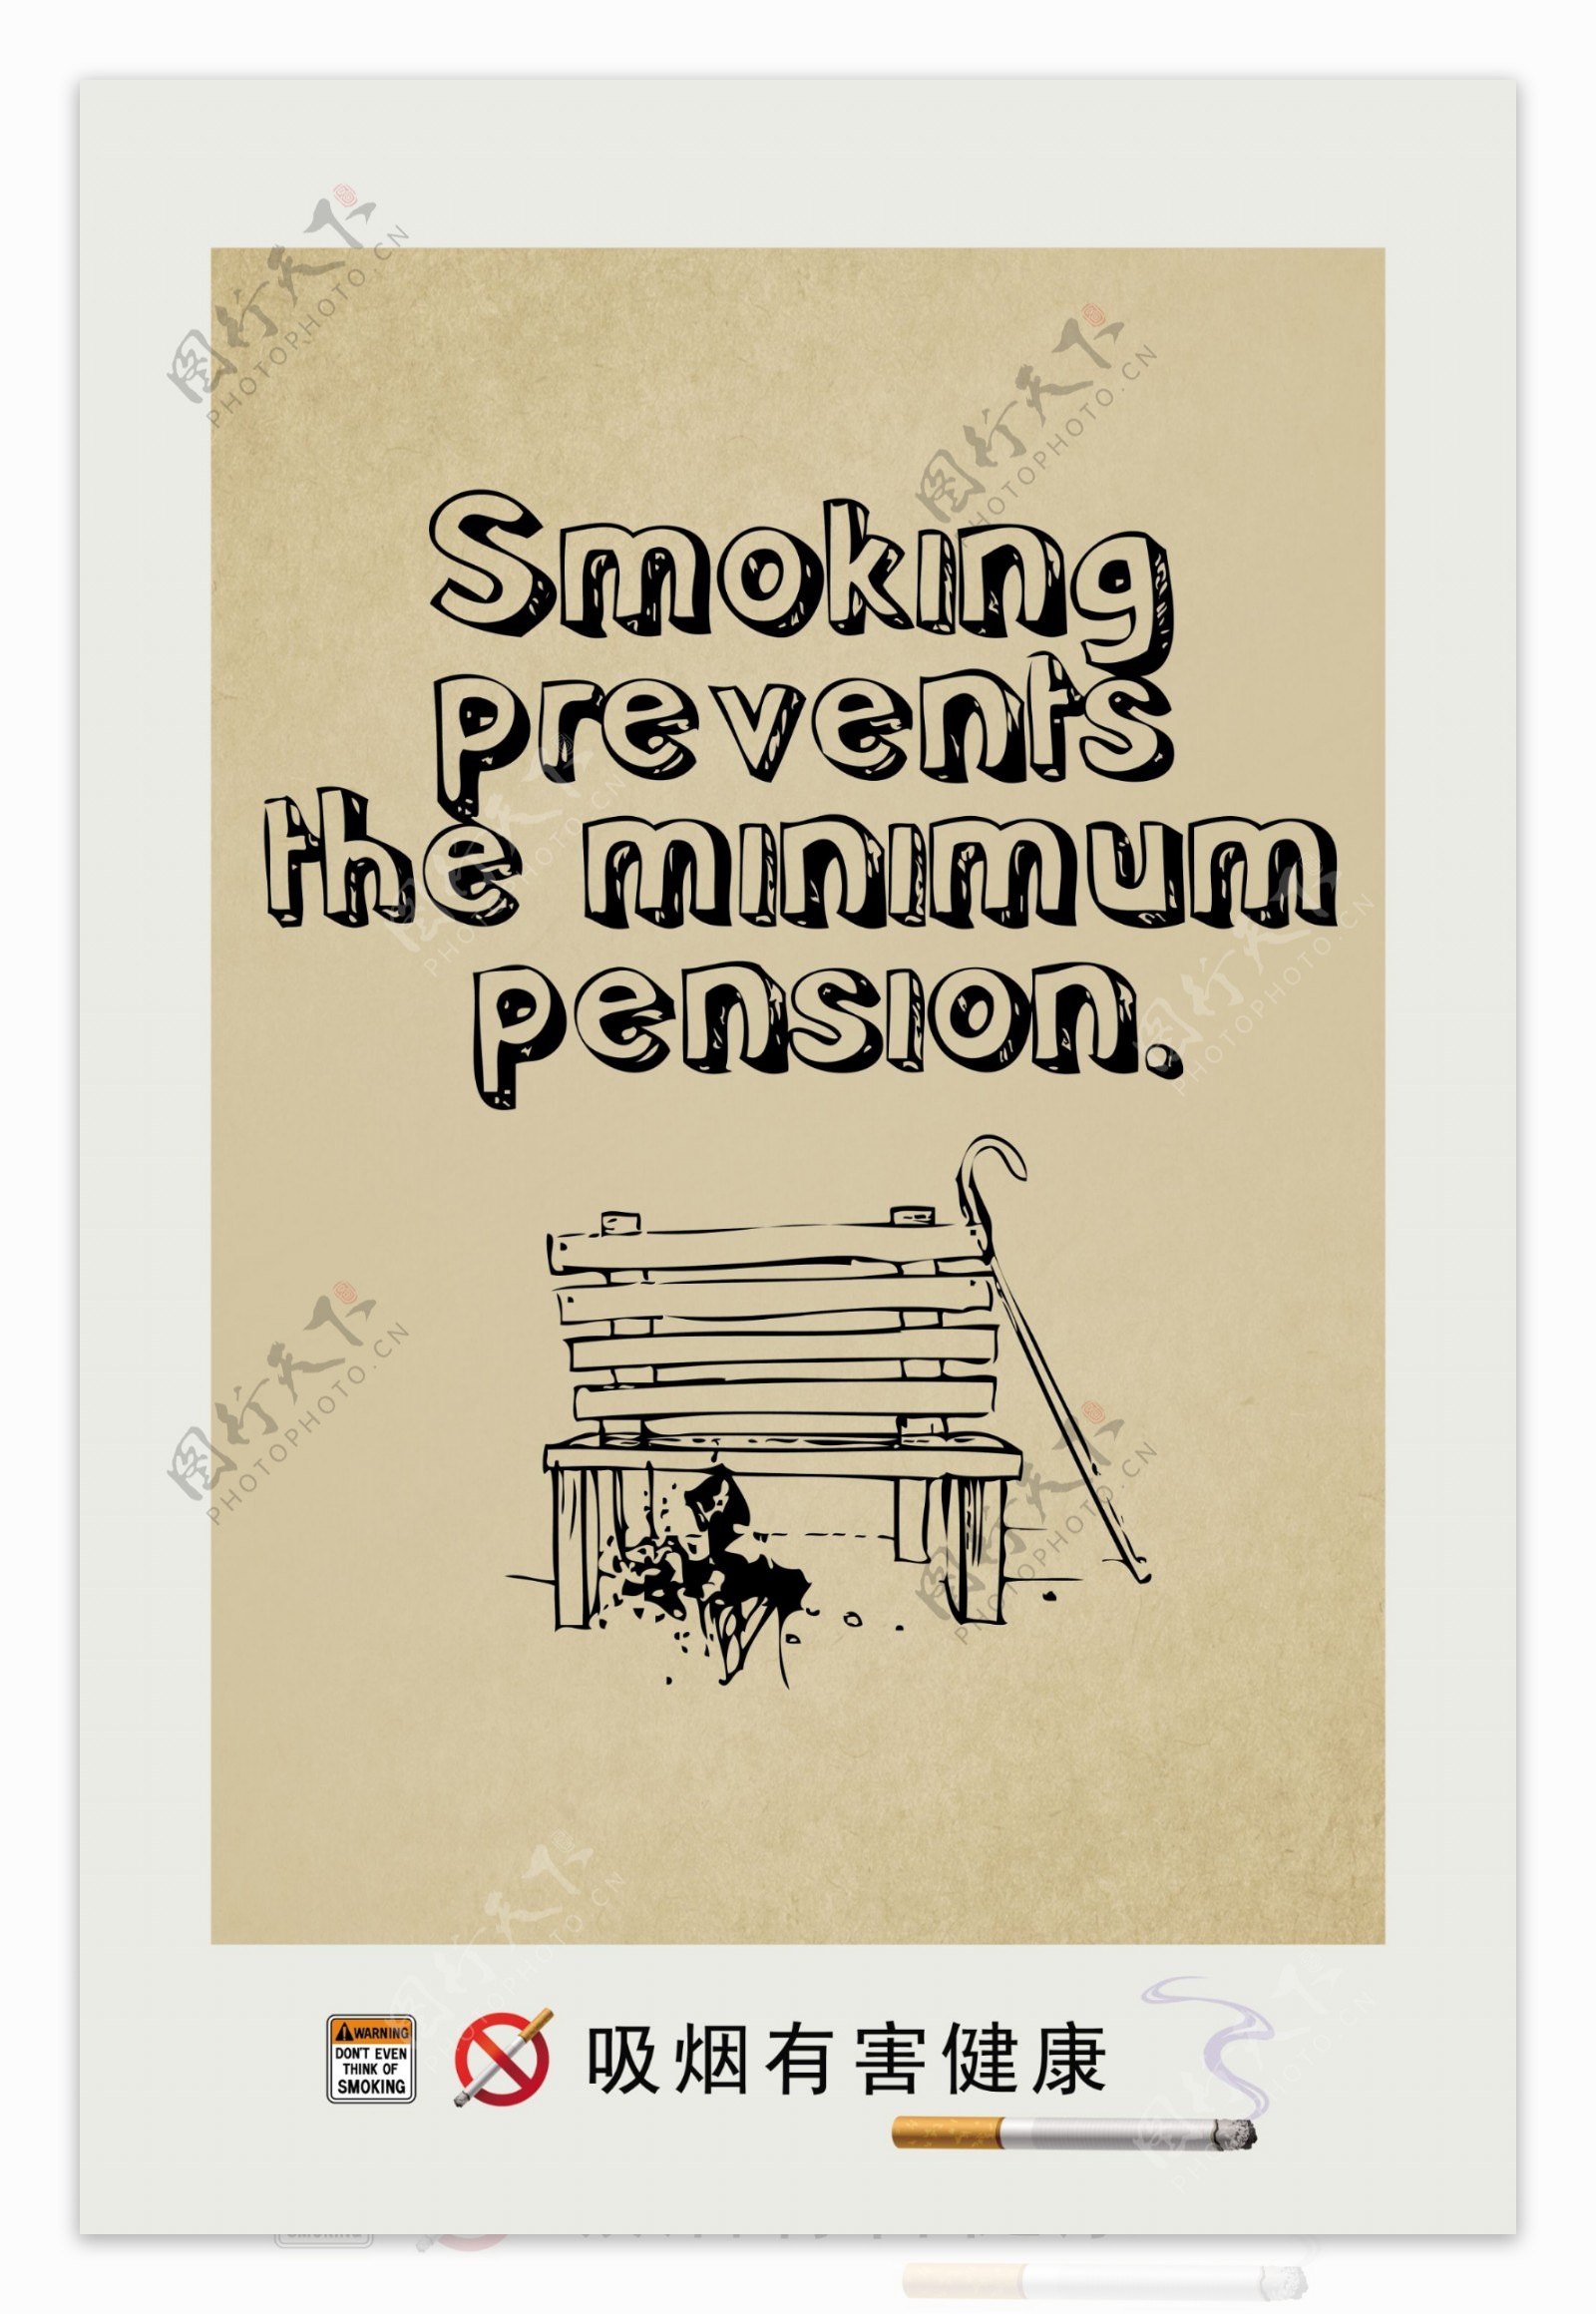 吸烟有害健康公益海报图片